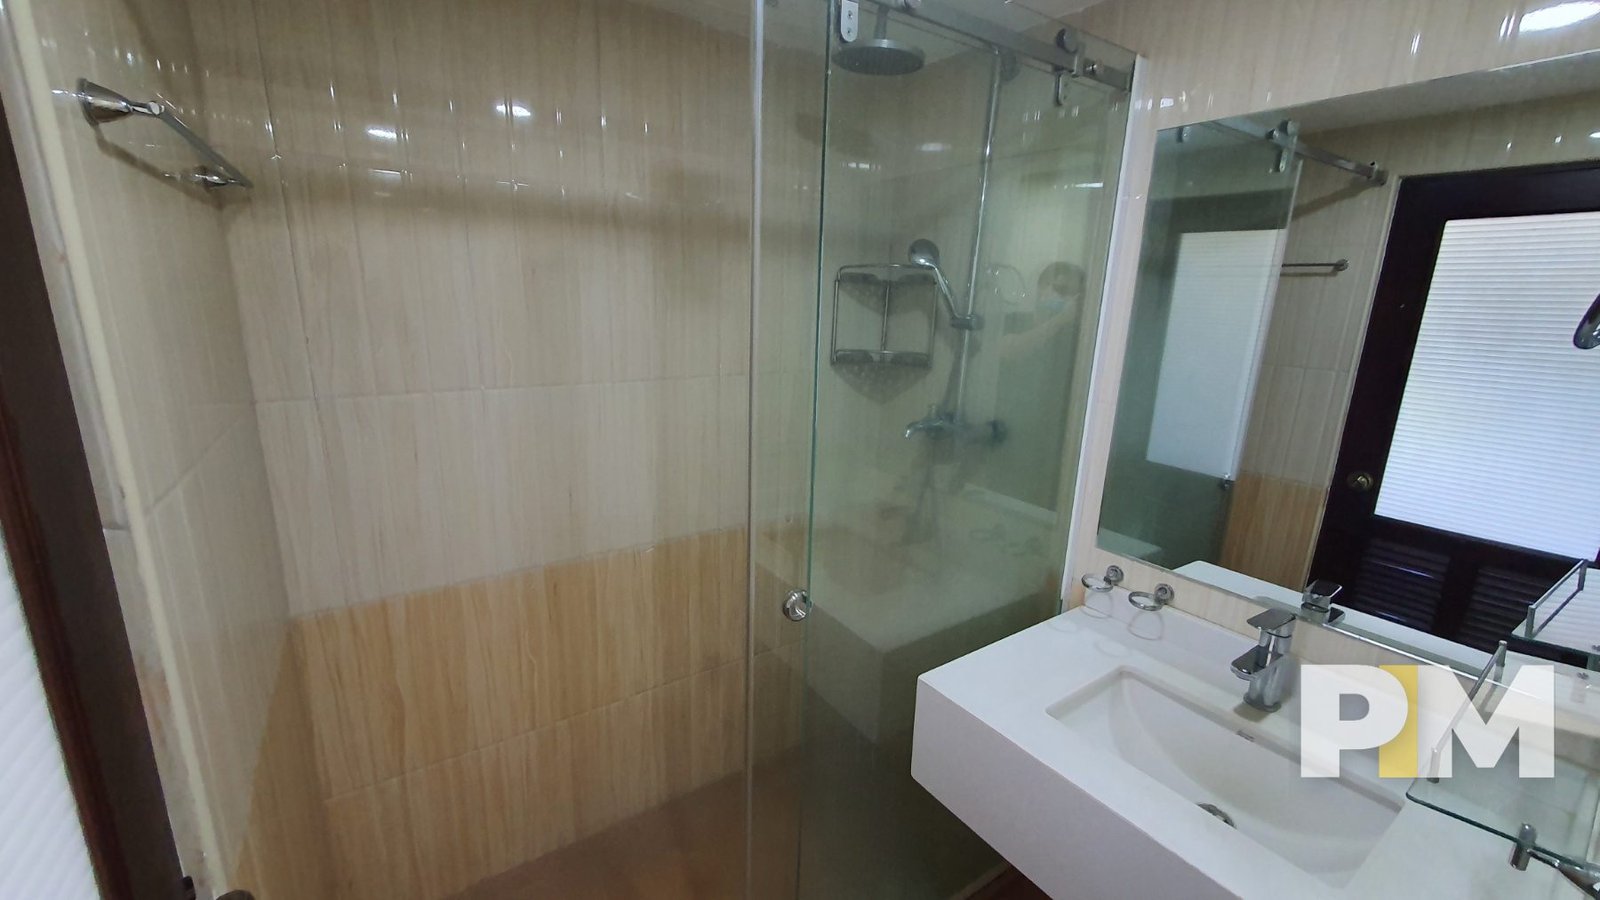 bathroom - real estate in myanmar